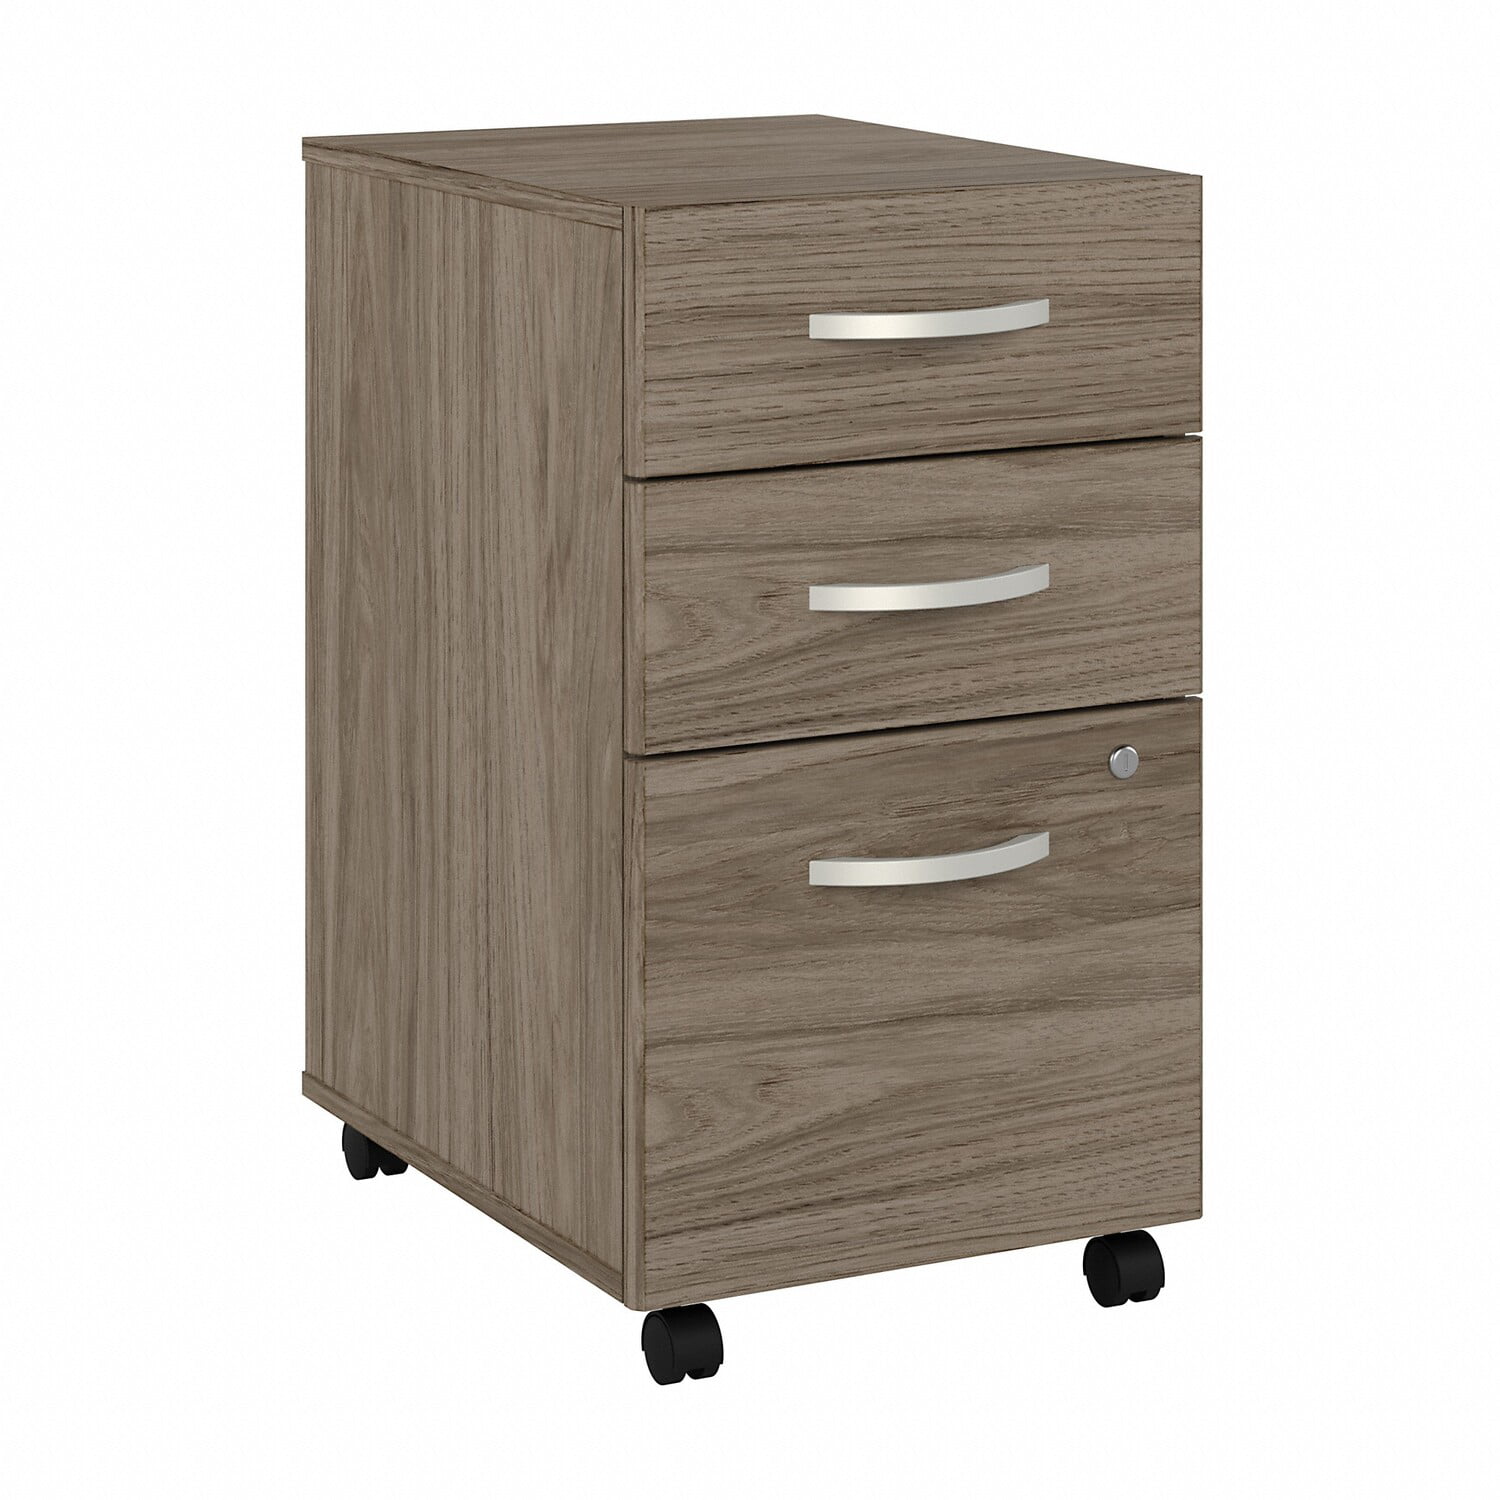 Mobile File Cabinet Bedside Side Table Filling 3 Drawers Pedestal Office Storage 